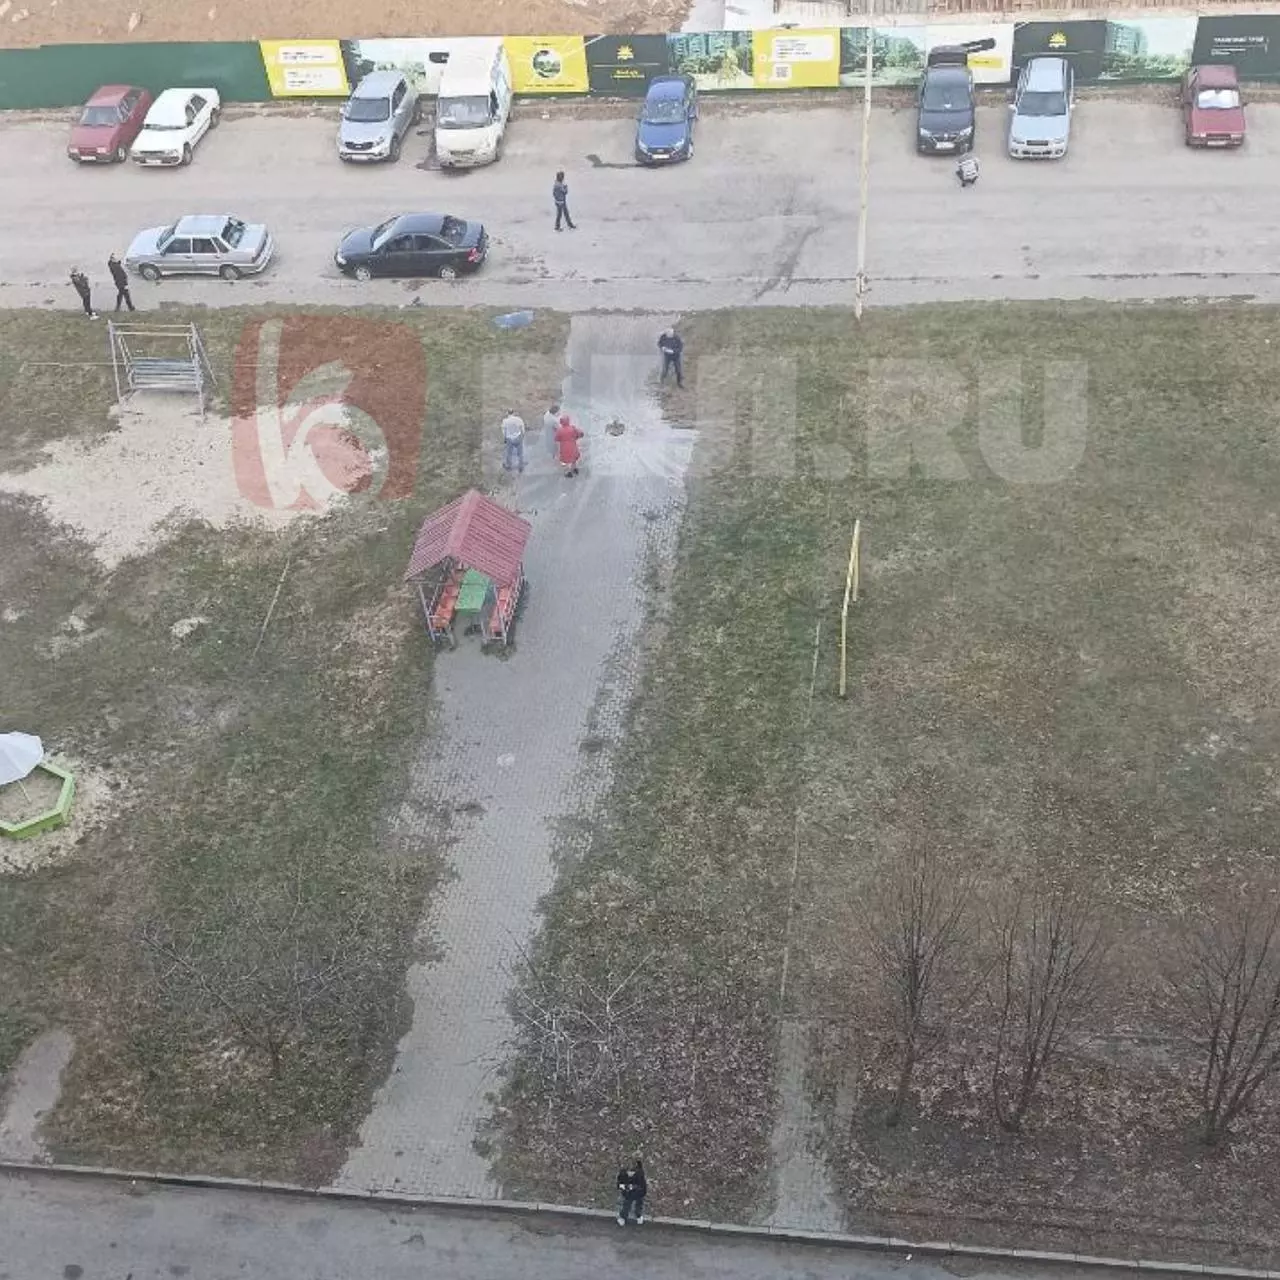 Обстановка на детской площадке сразу после ракетного обстрела со стороны ВСУ.